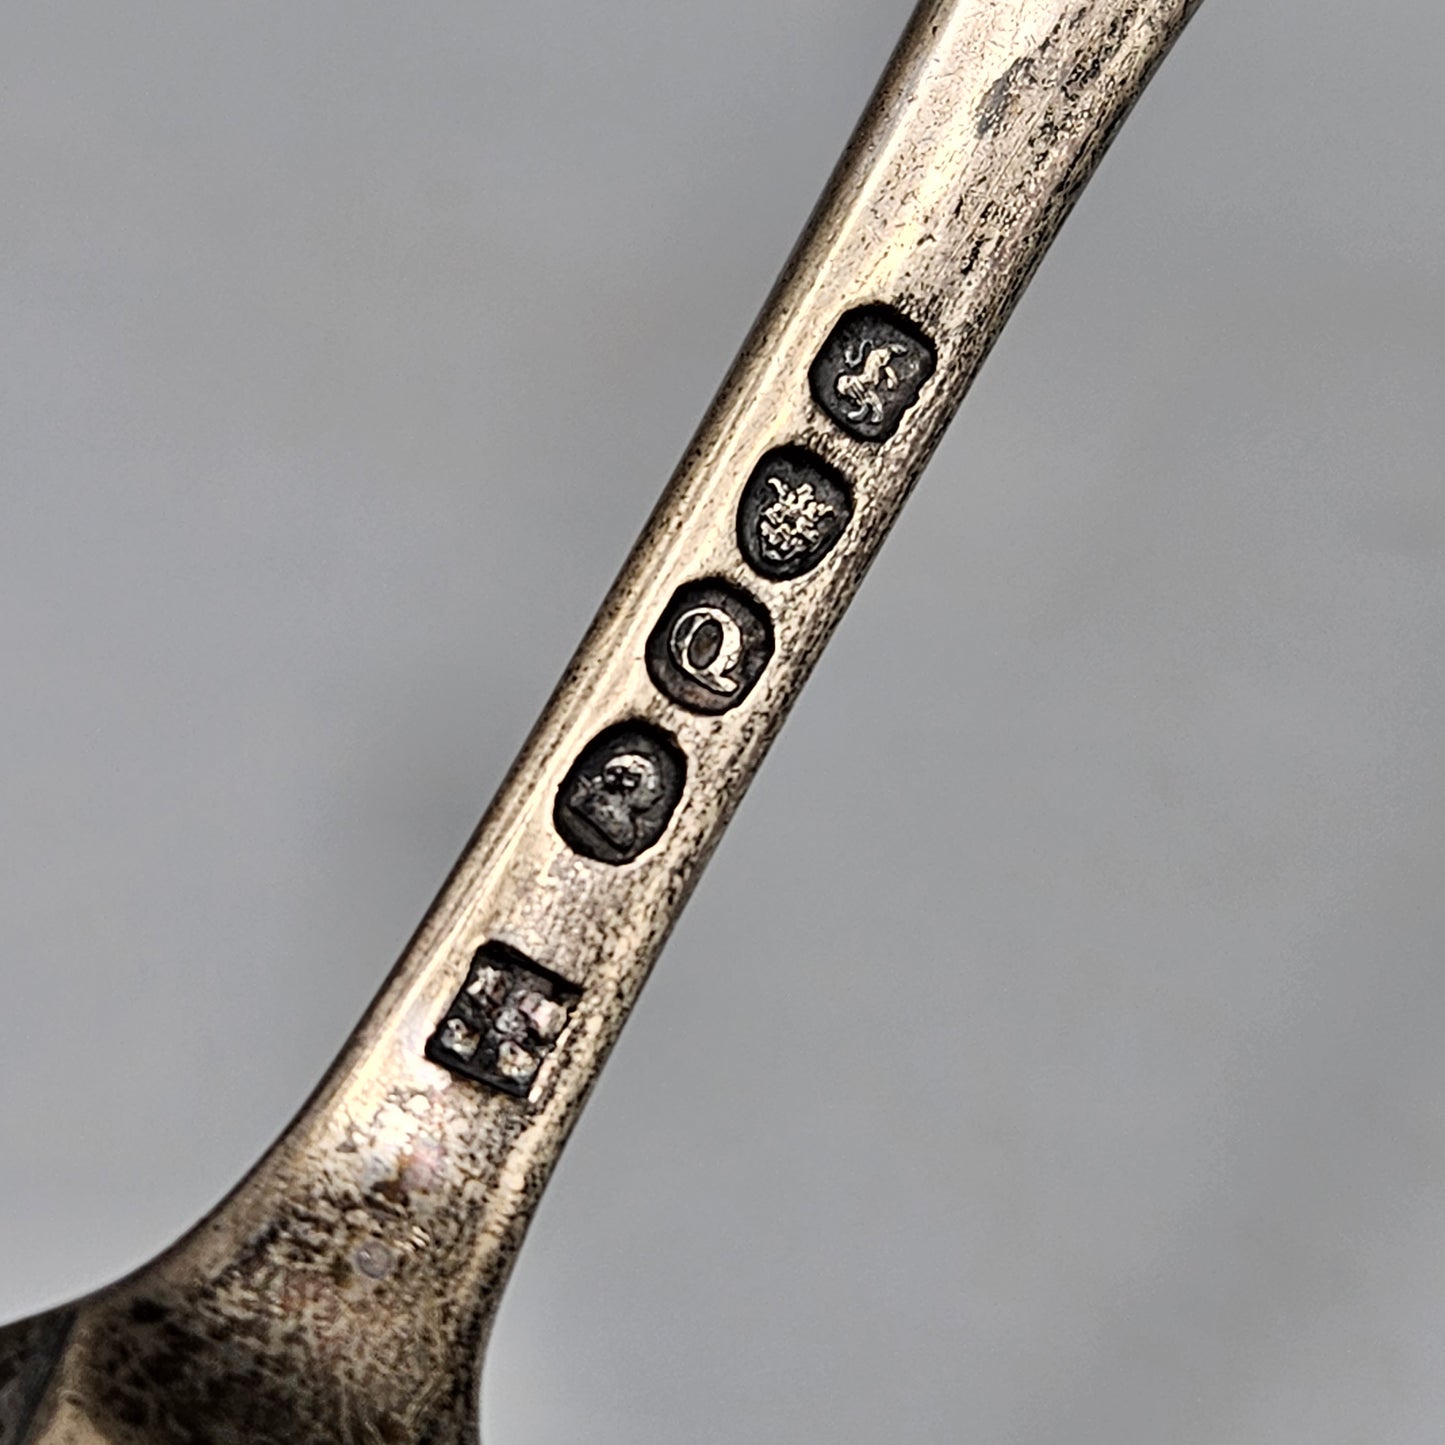 Antique Marrow Spoon